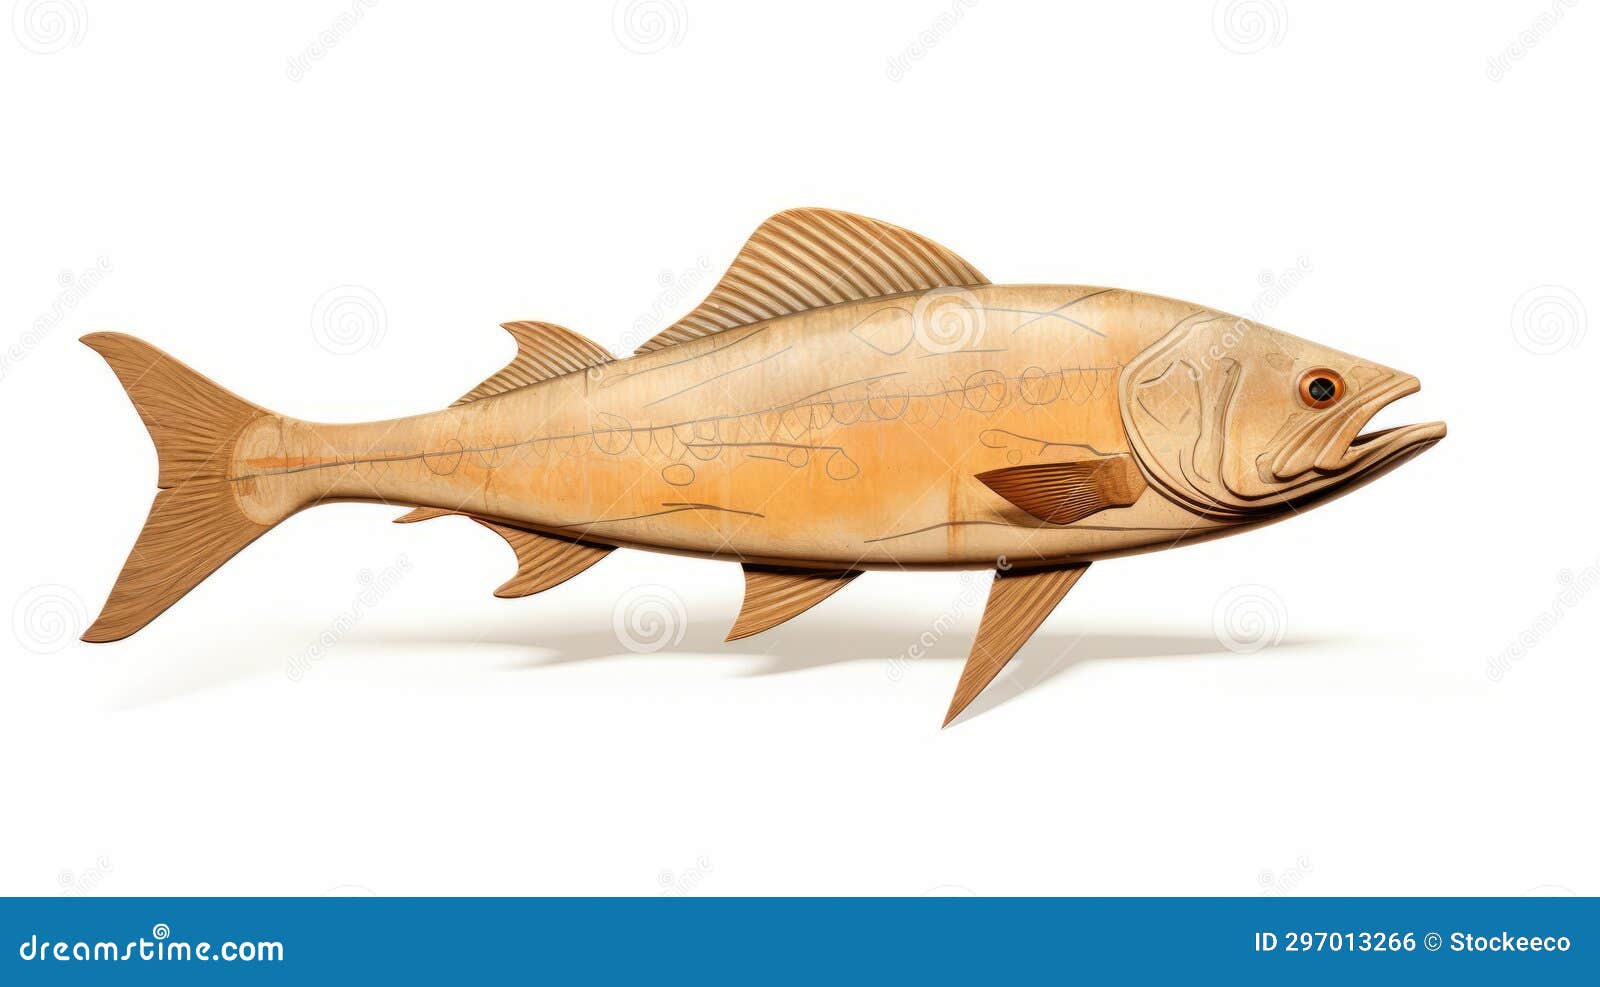 6,739 Measurement Fish Images, Stock Photos, 3D objects, & Vectors